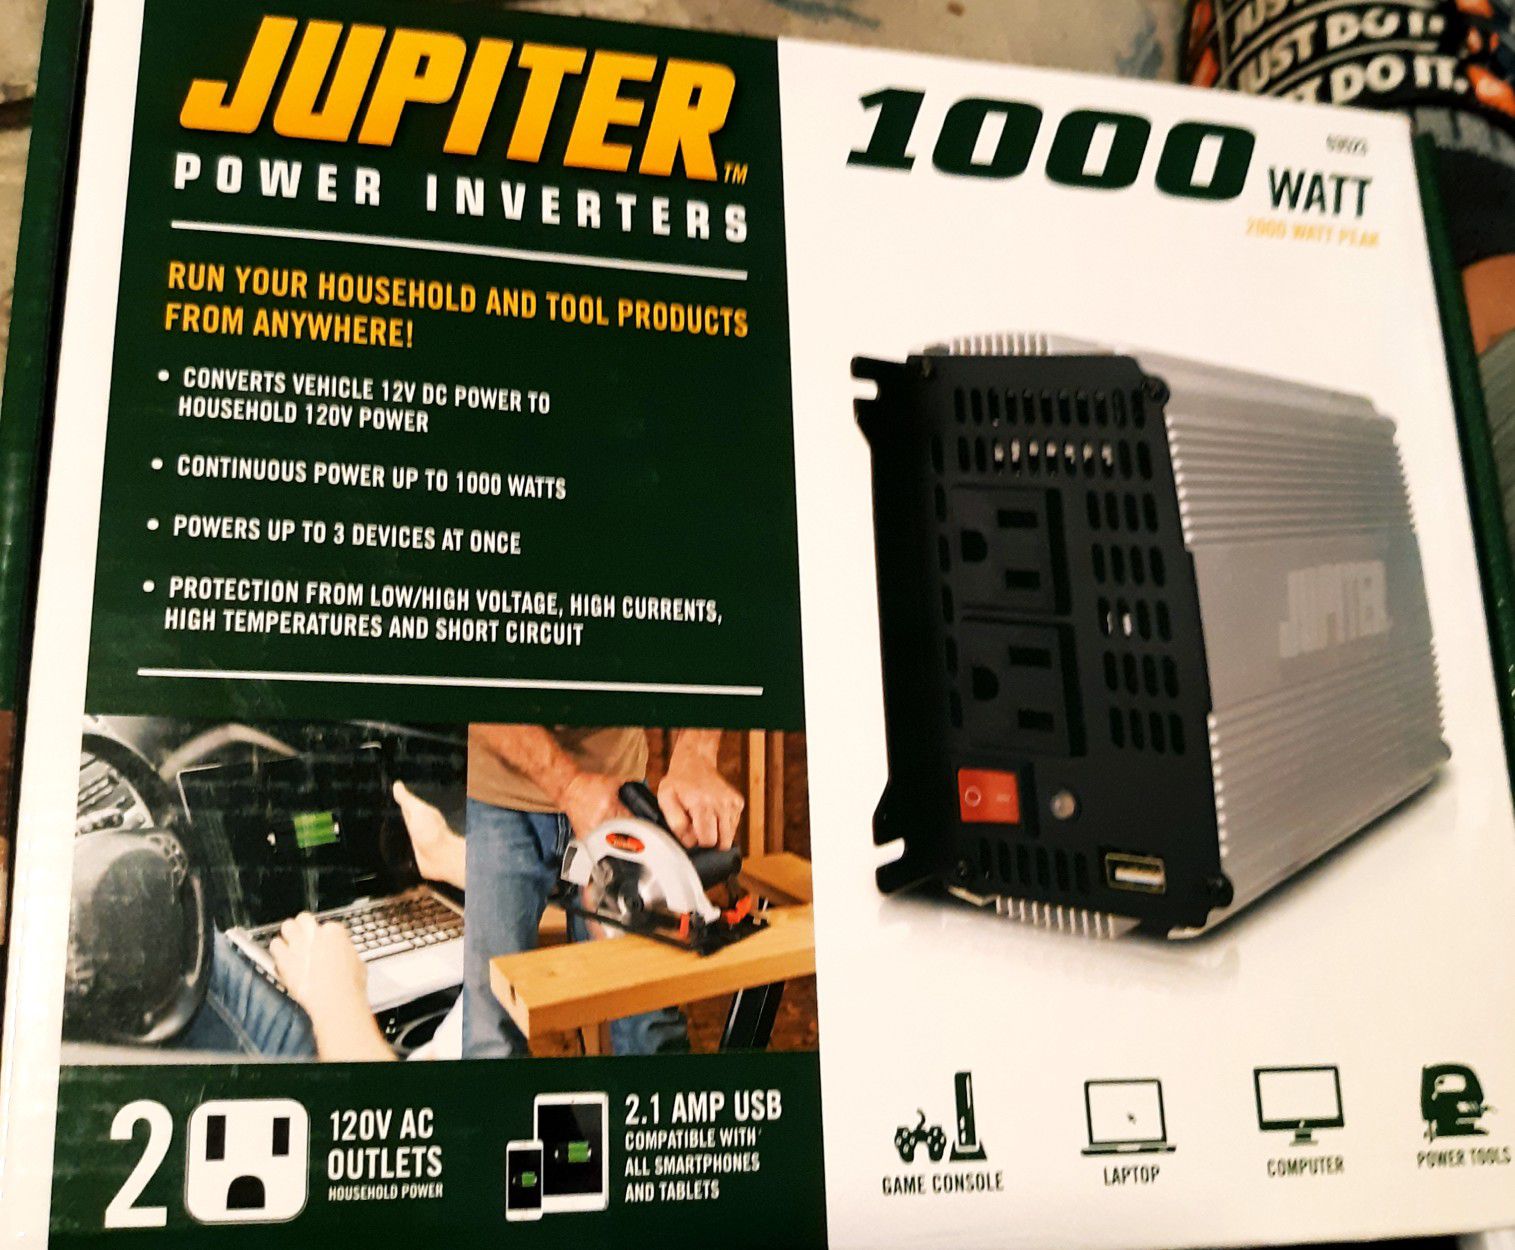 1000-watt Power Inverter